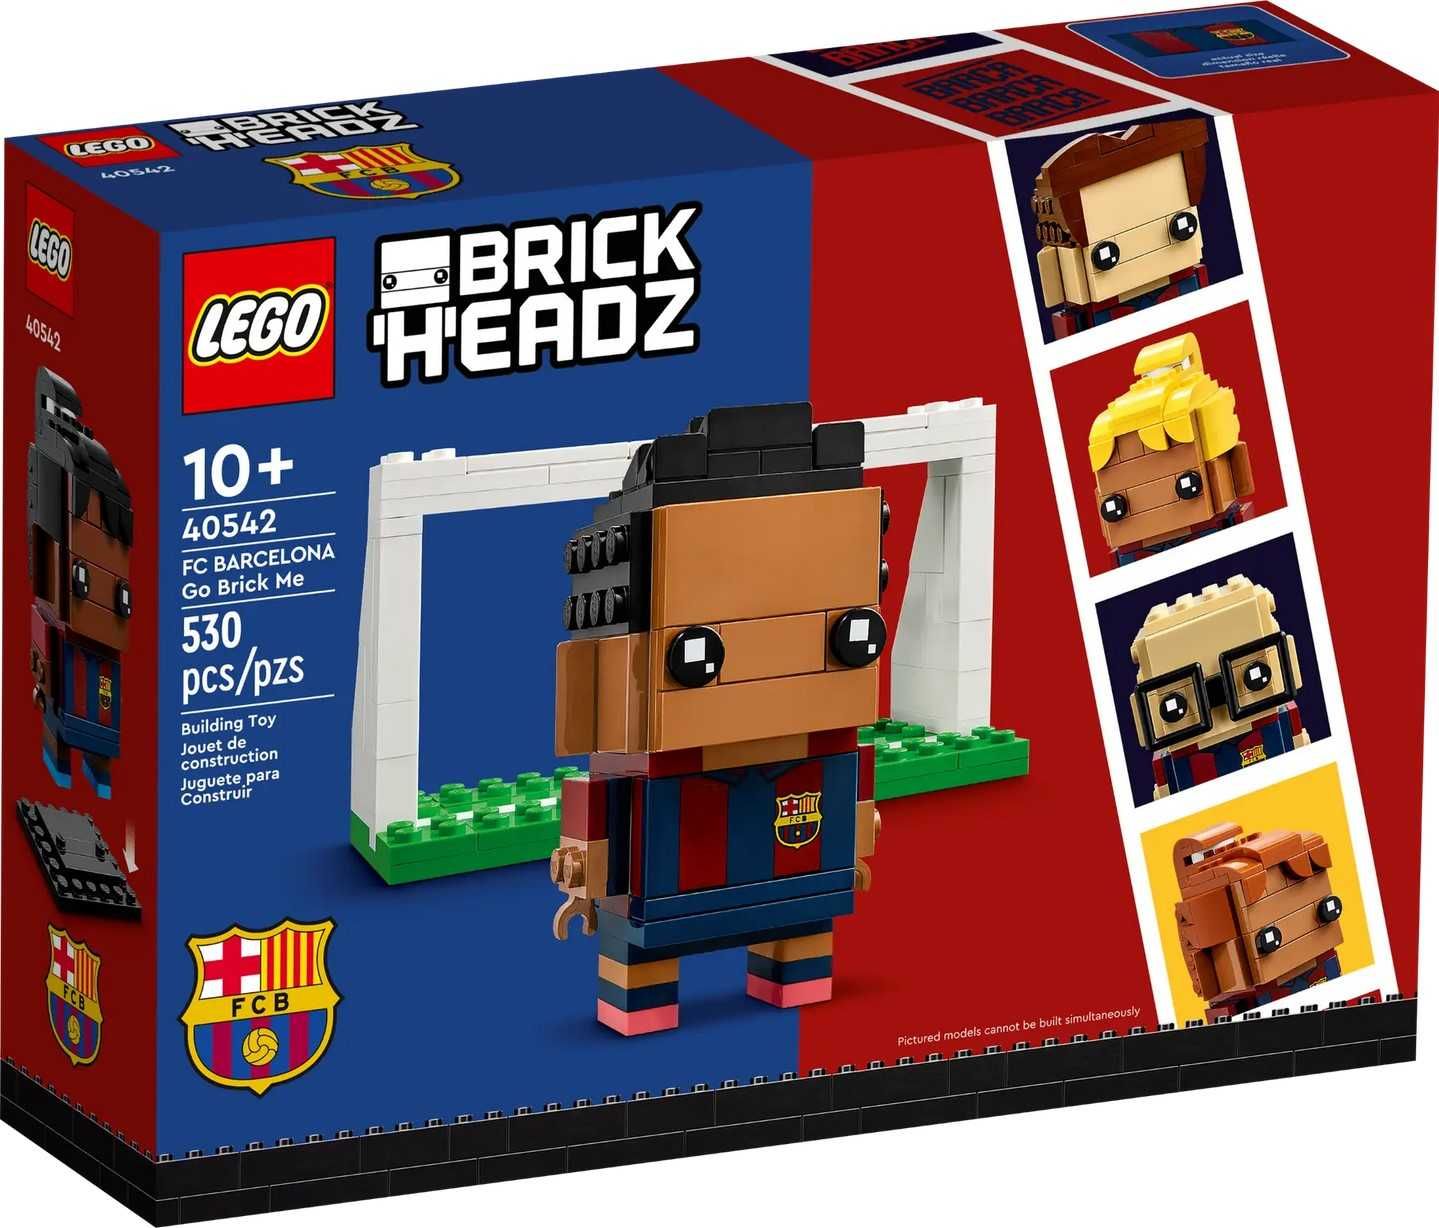 Klocki LEGO 40542  |  Brickheadz  |  FC Barcelona  |  NOWY!